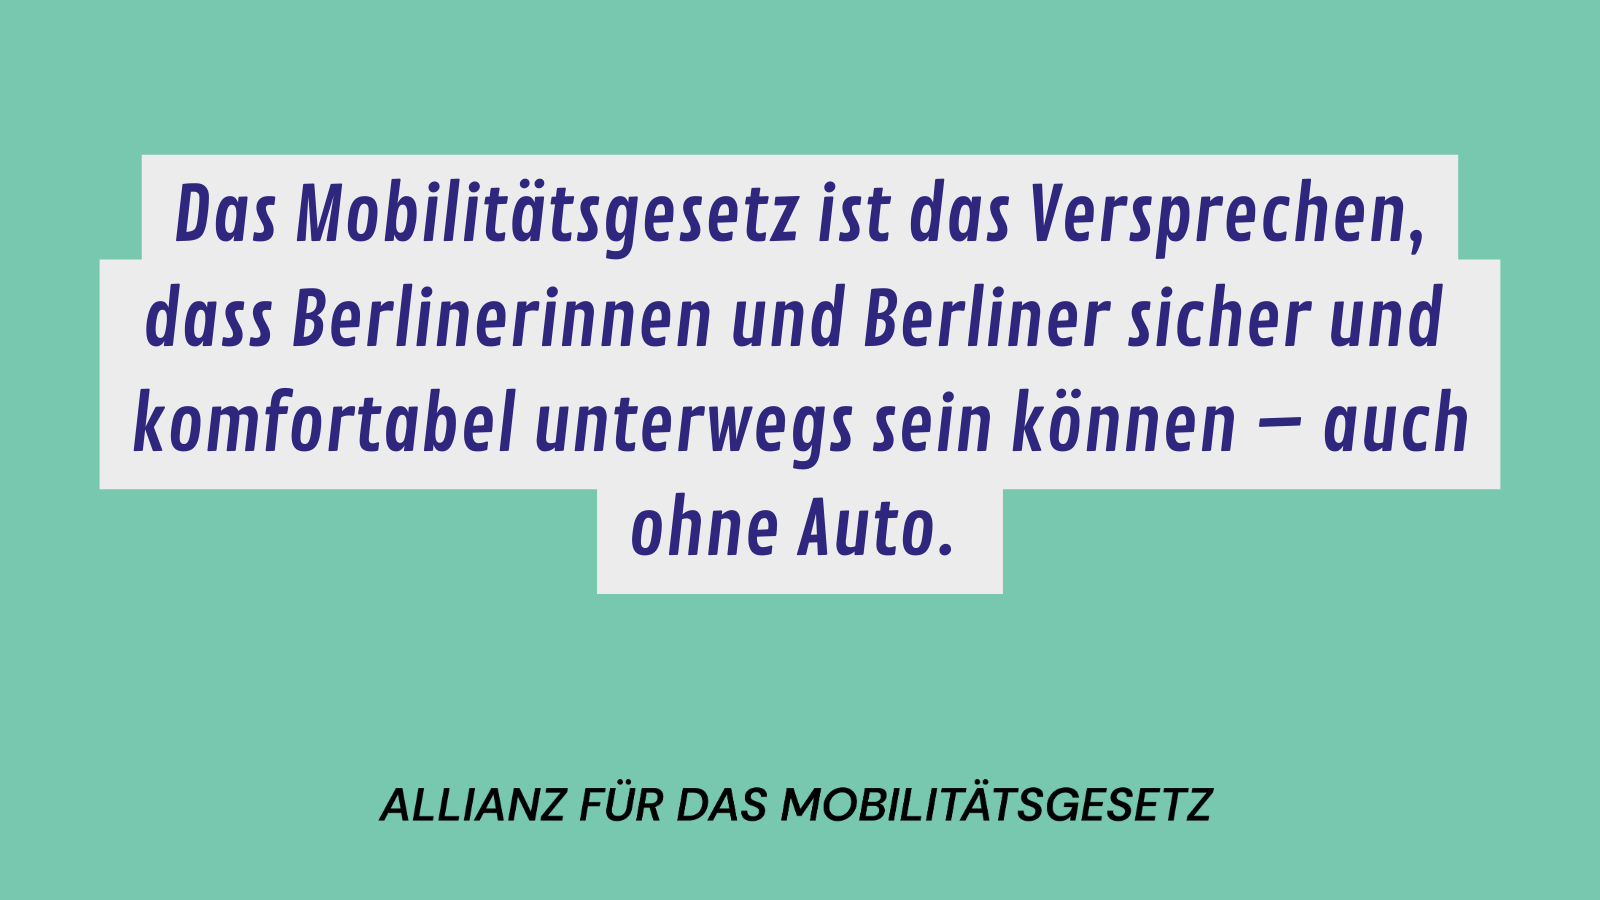 Das Mobilitätsgesetz ist das Versprechen, dass Berliner*innen siche rund komfortabel unterwegs sein können - auch ohne AUto.